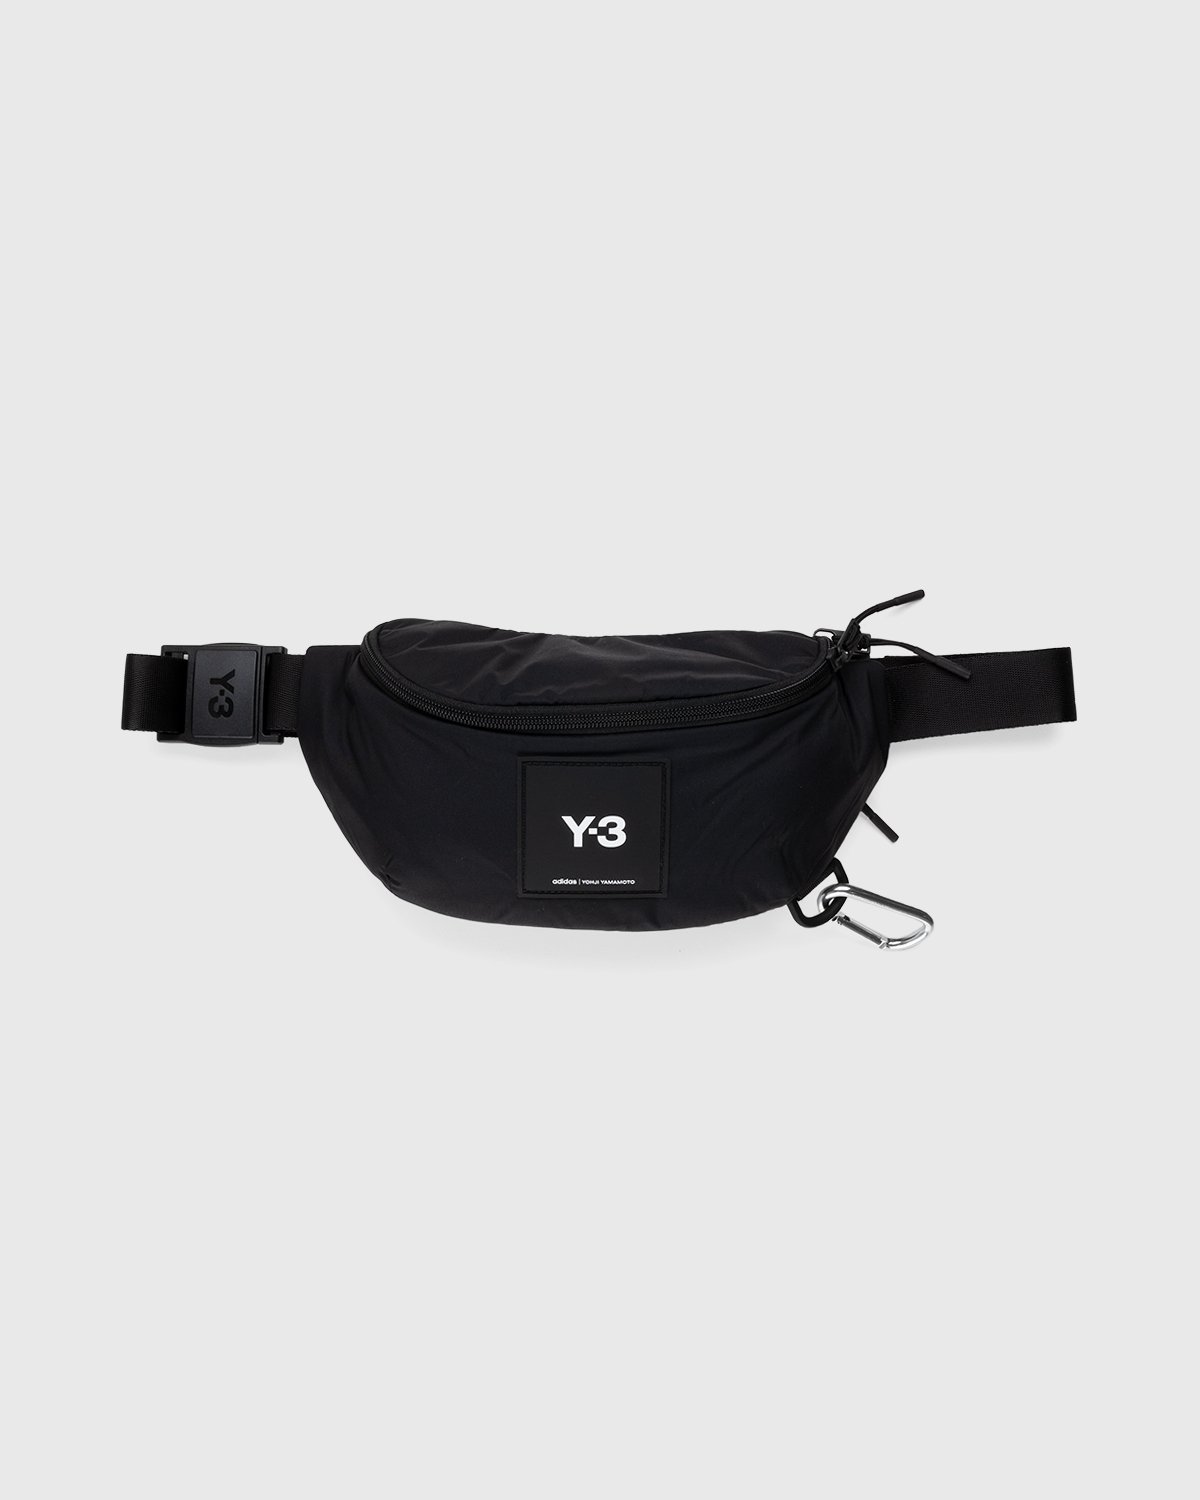 Y-3 - Cordura Waist Bag Black - Accessories - Black - Image 1